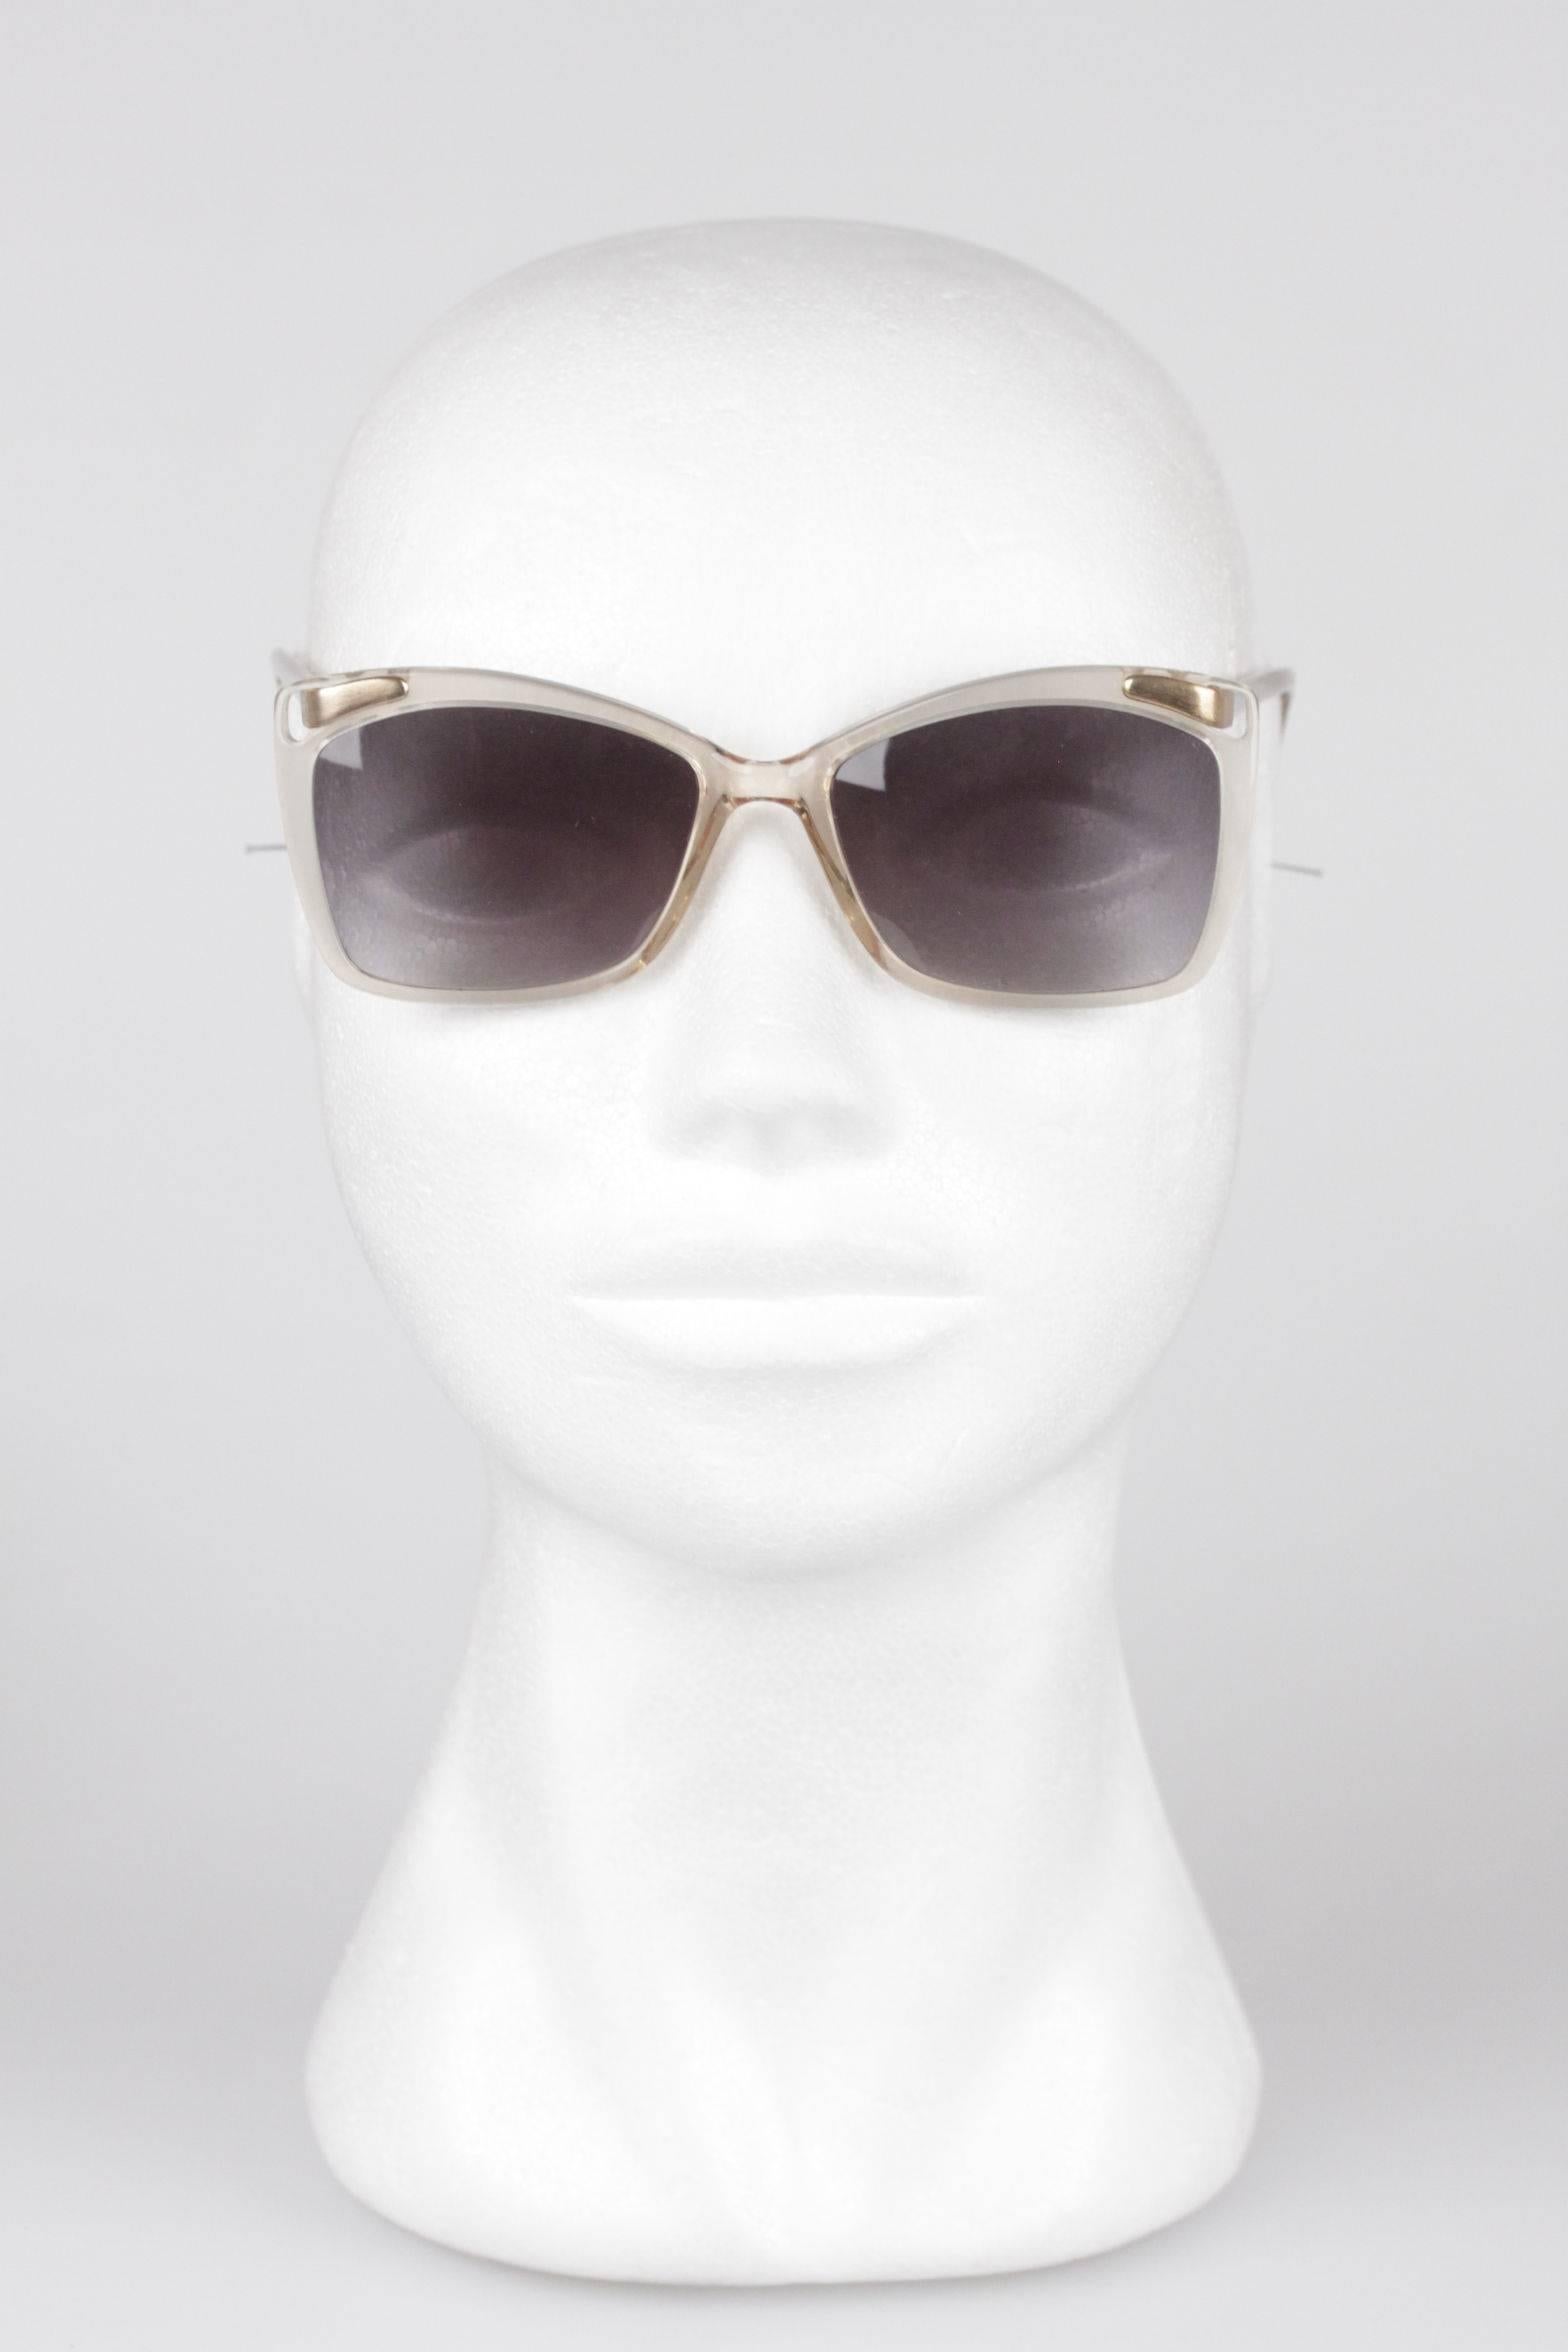 LANVIN VINTAGE MINT Sunglasses Ivory/Gold FRAME FRANCE 53/20 OL 521 076 w/CASE 1